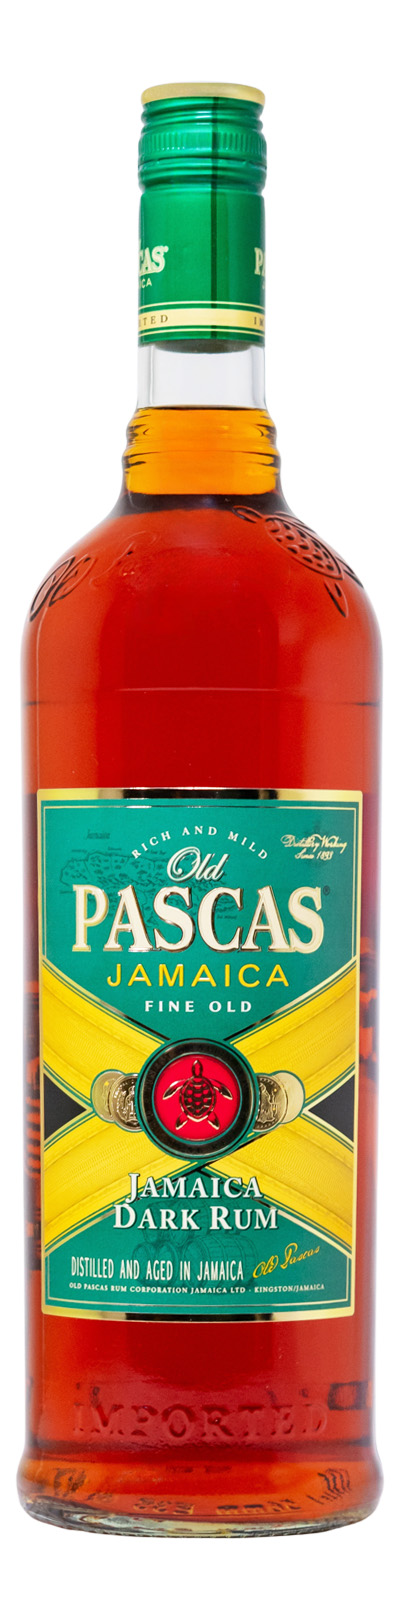 Old Pascas Jamaica Dark Rum - 1 Liter 40% vol